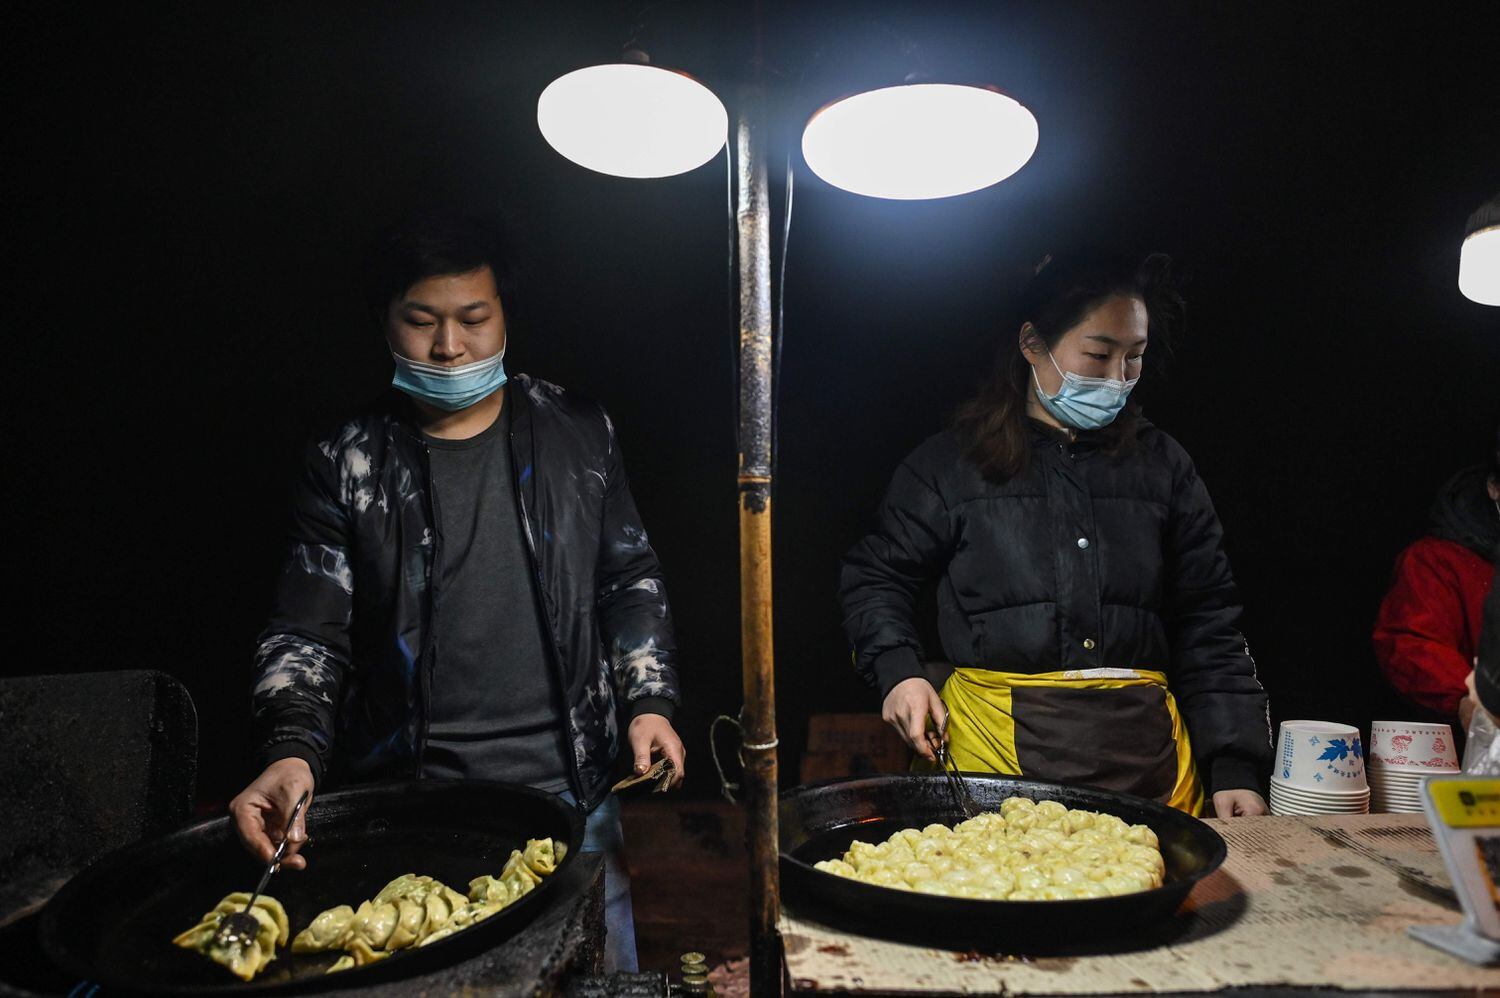 Una pareja con mascarillas prepara alimentos en un puesto de comida callejera en Wuhan.